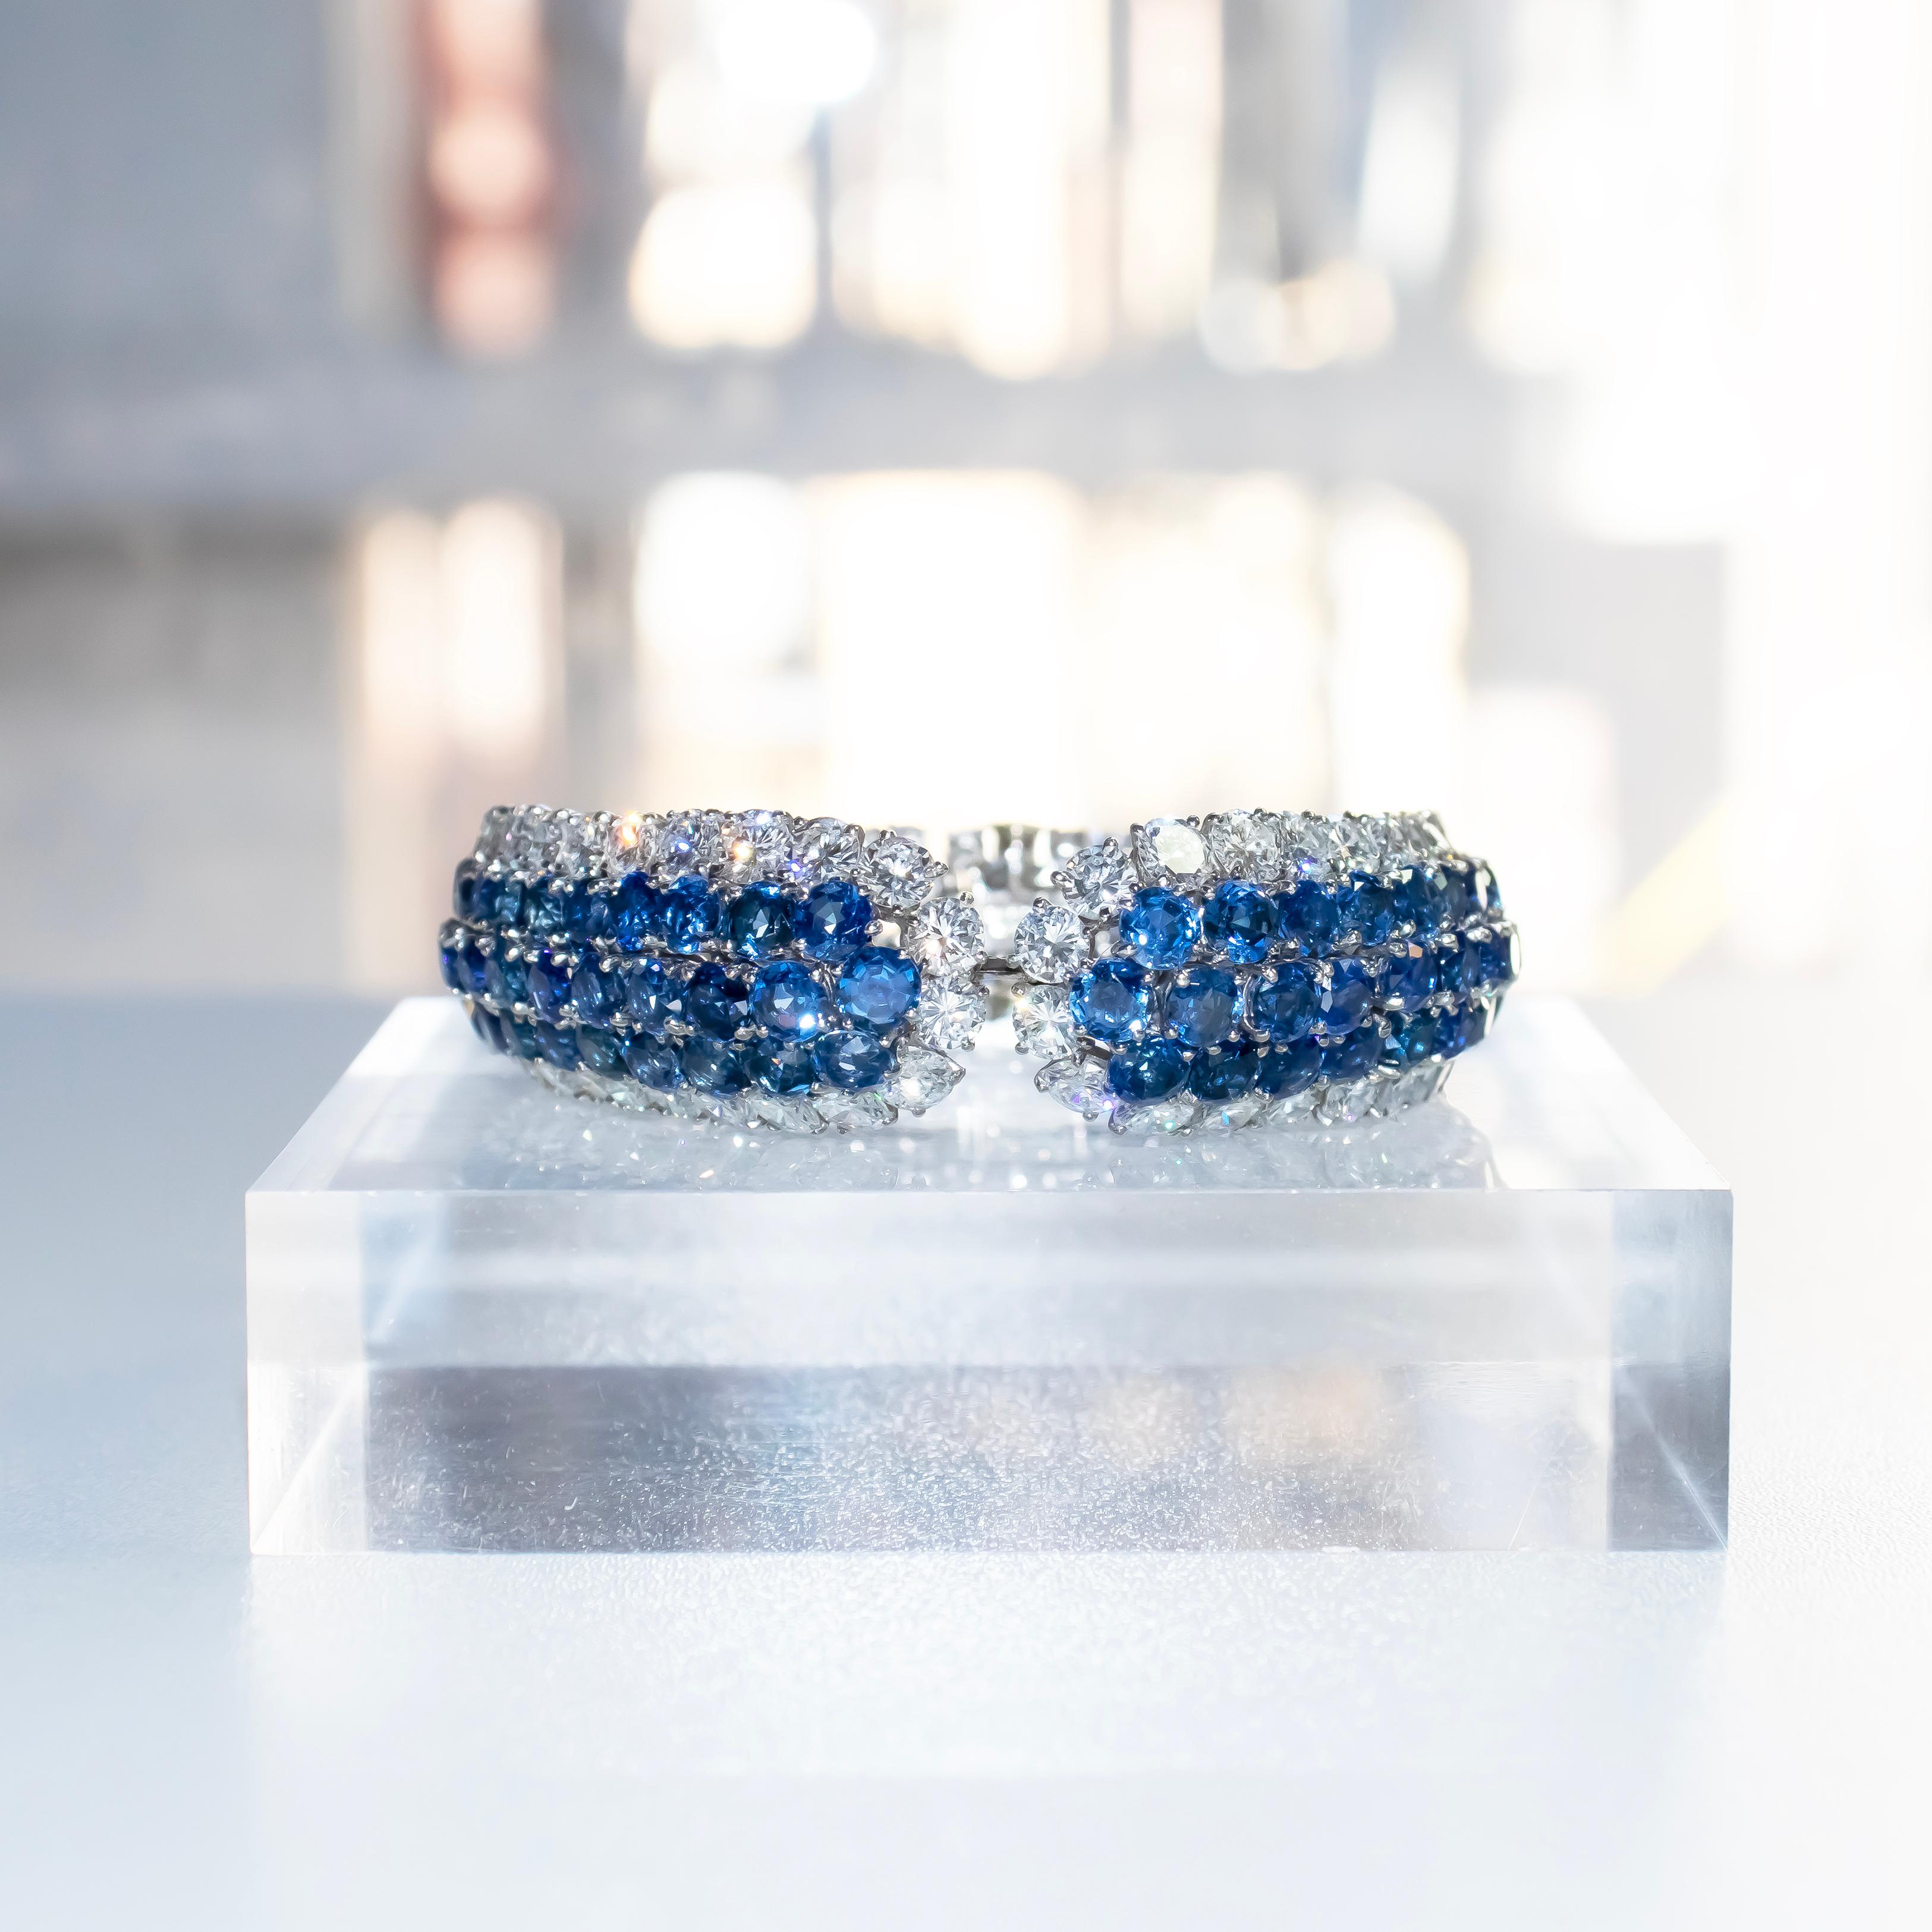 Ce bracelet exquis, fabriqué à la main par Van Cleef & Arpels, est une œuvre d'art magistrale. Avec un assortiment éblouissant de 132 saphirs bleus de tailles différentes (allant de 3,5 mm à 5,0 mm chacun) et 92 diamants ronds de taille brillant,